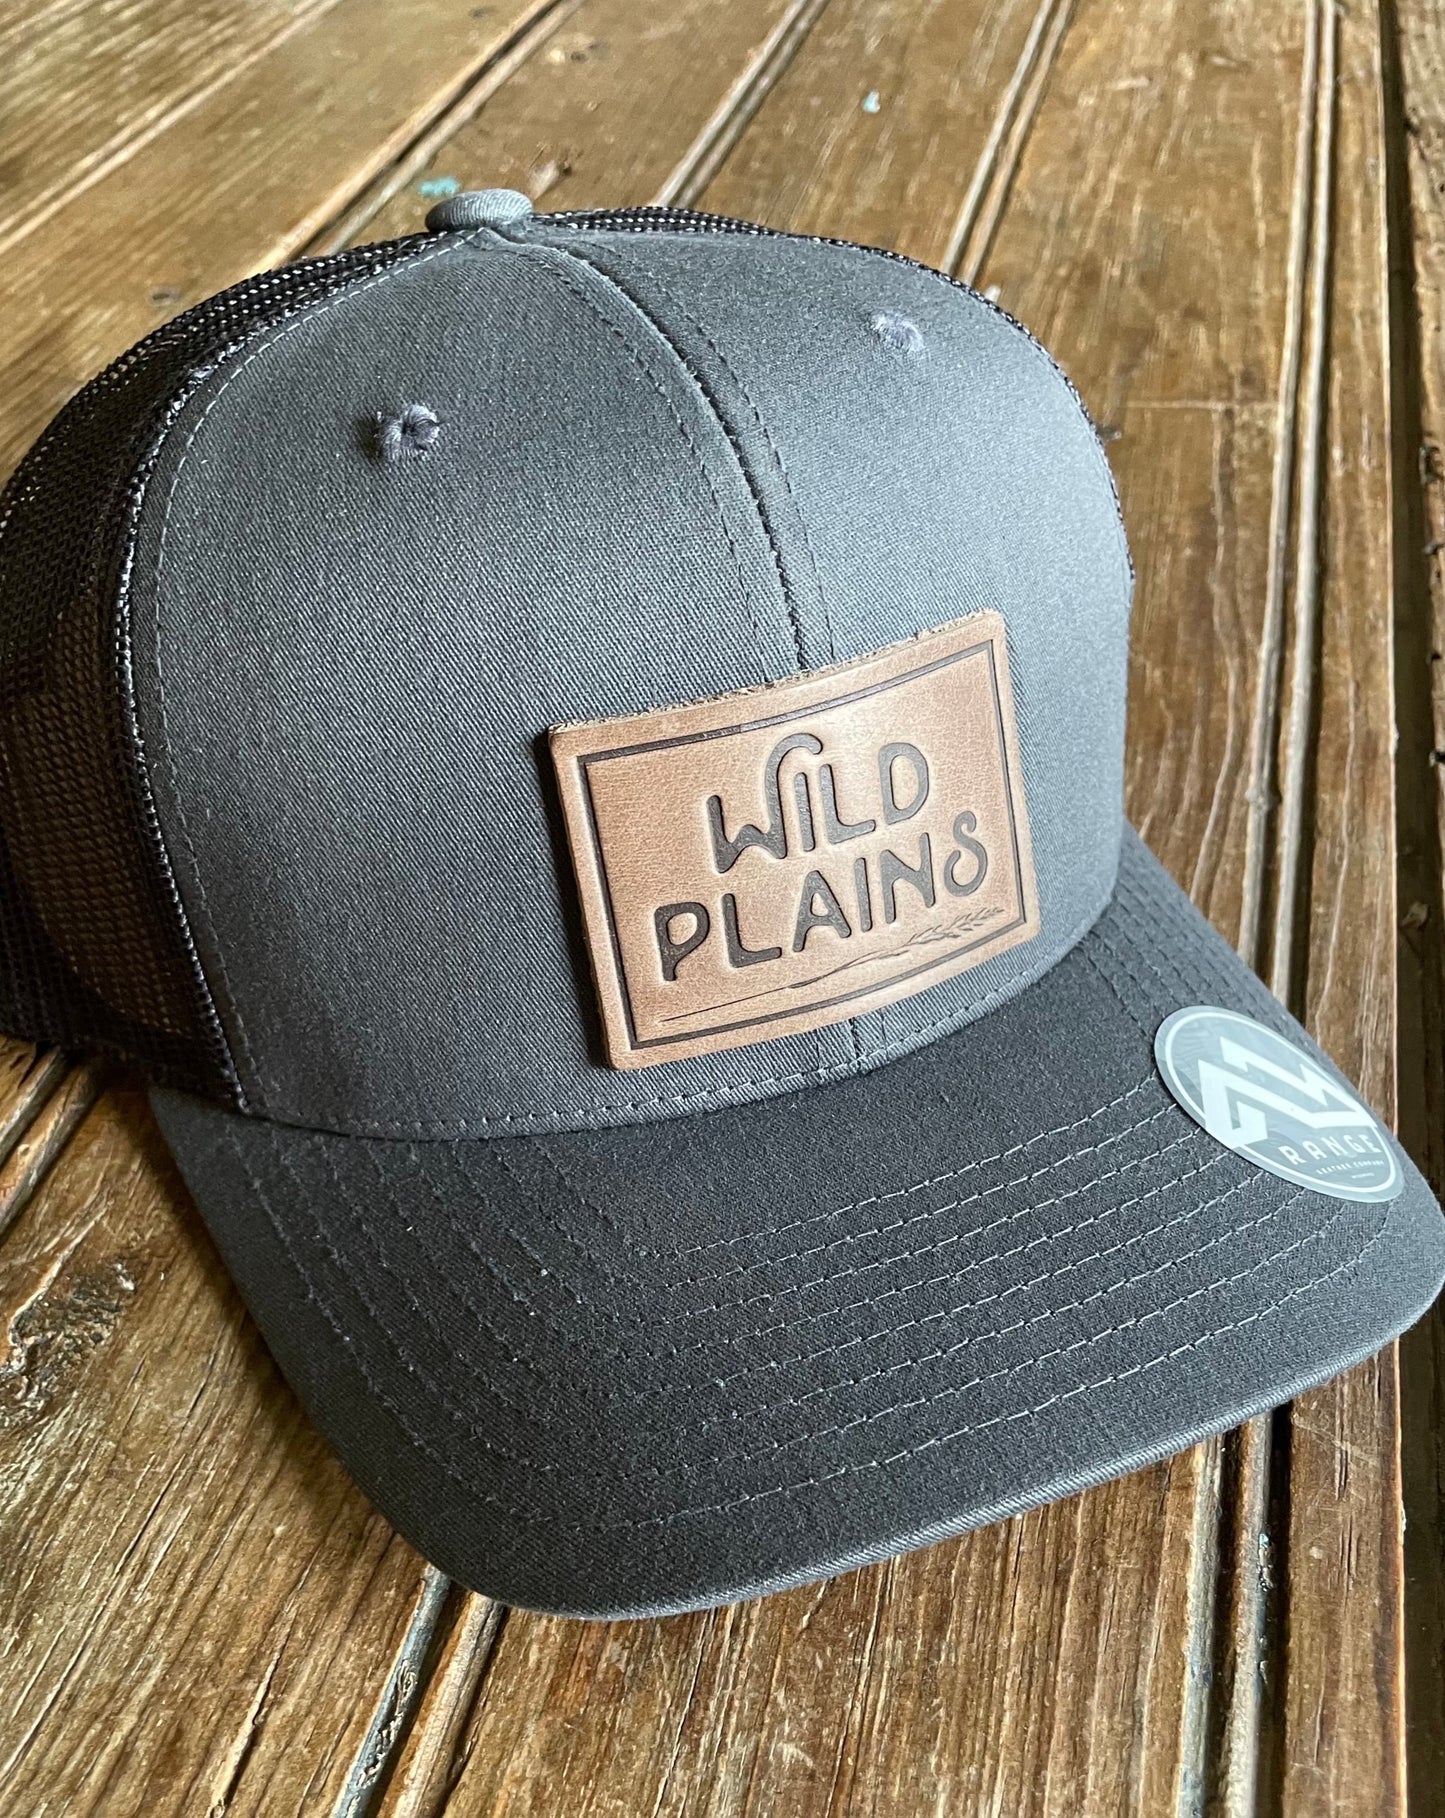 Wild Plains Leather Patch Cap